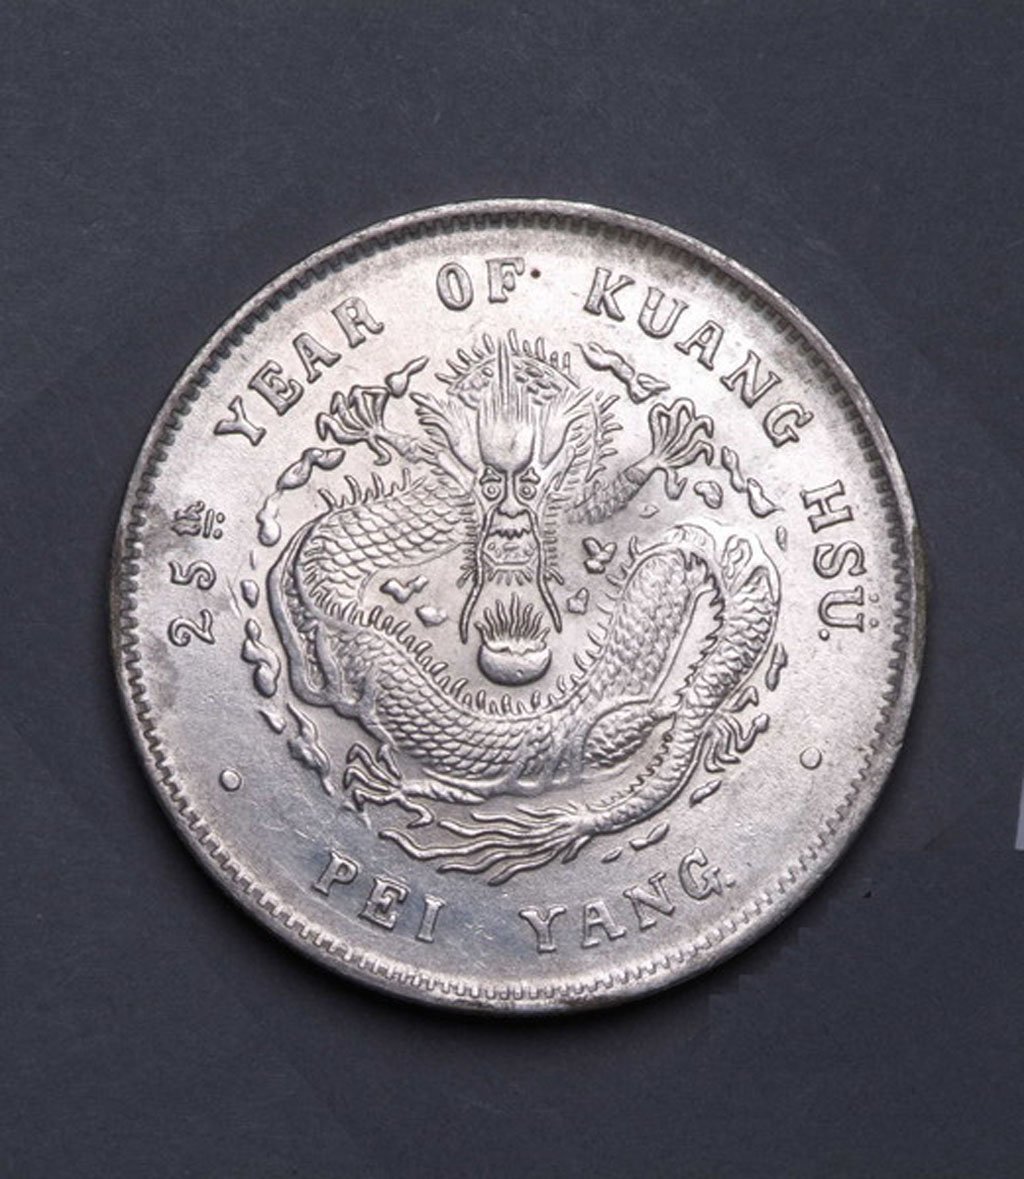 二十五年北洋造光绪元宝库平七钱二分银币一枚